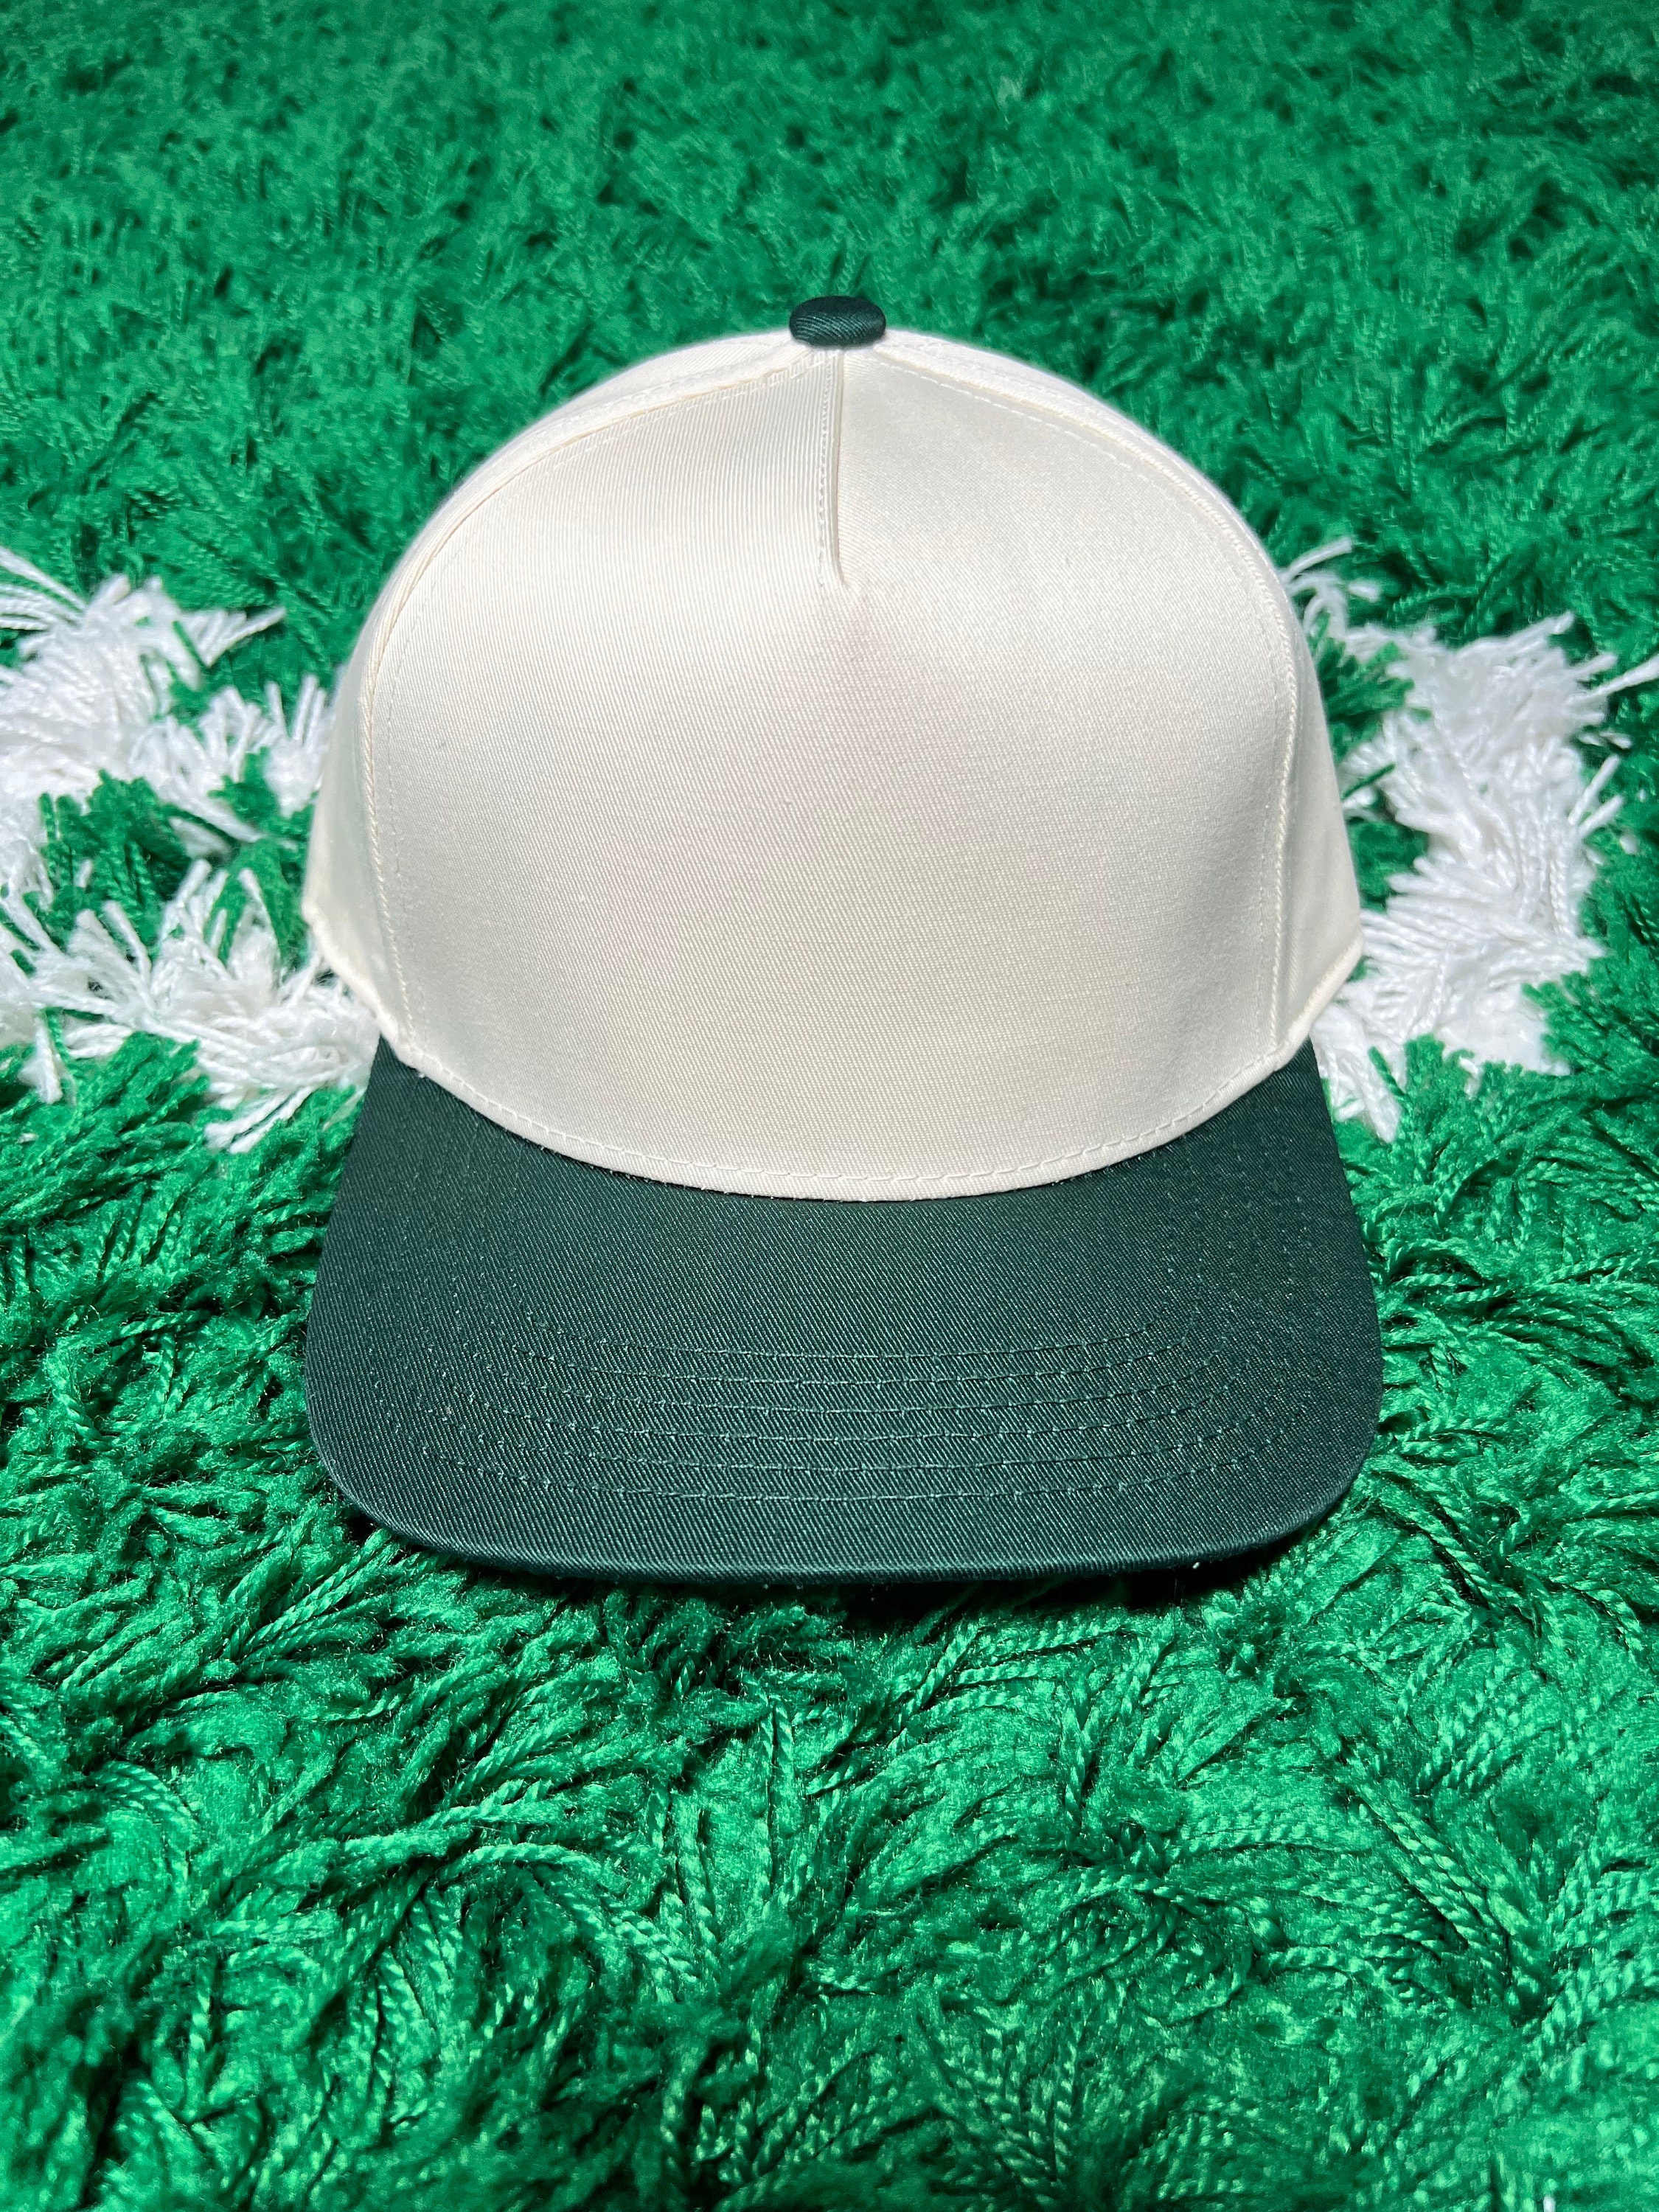 Kelly Green Trucker Hat Mock-up,mock up Baseball Hat, Blank Hat